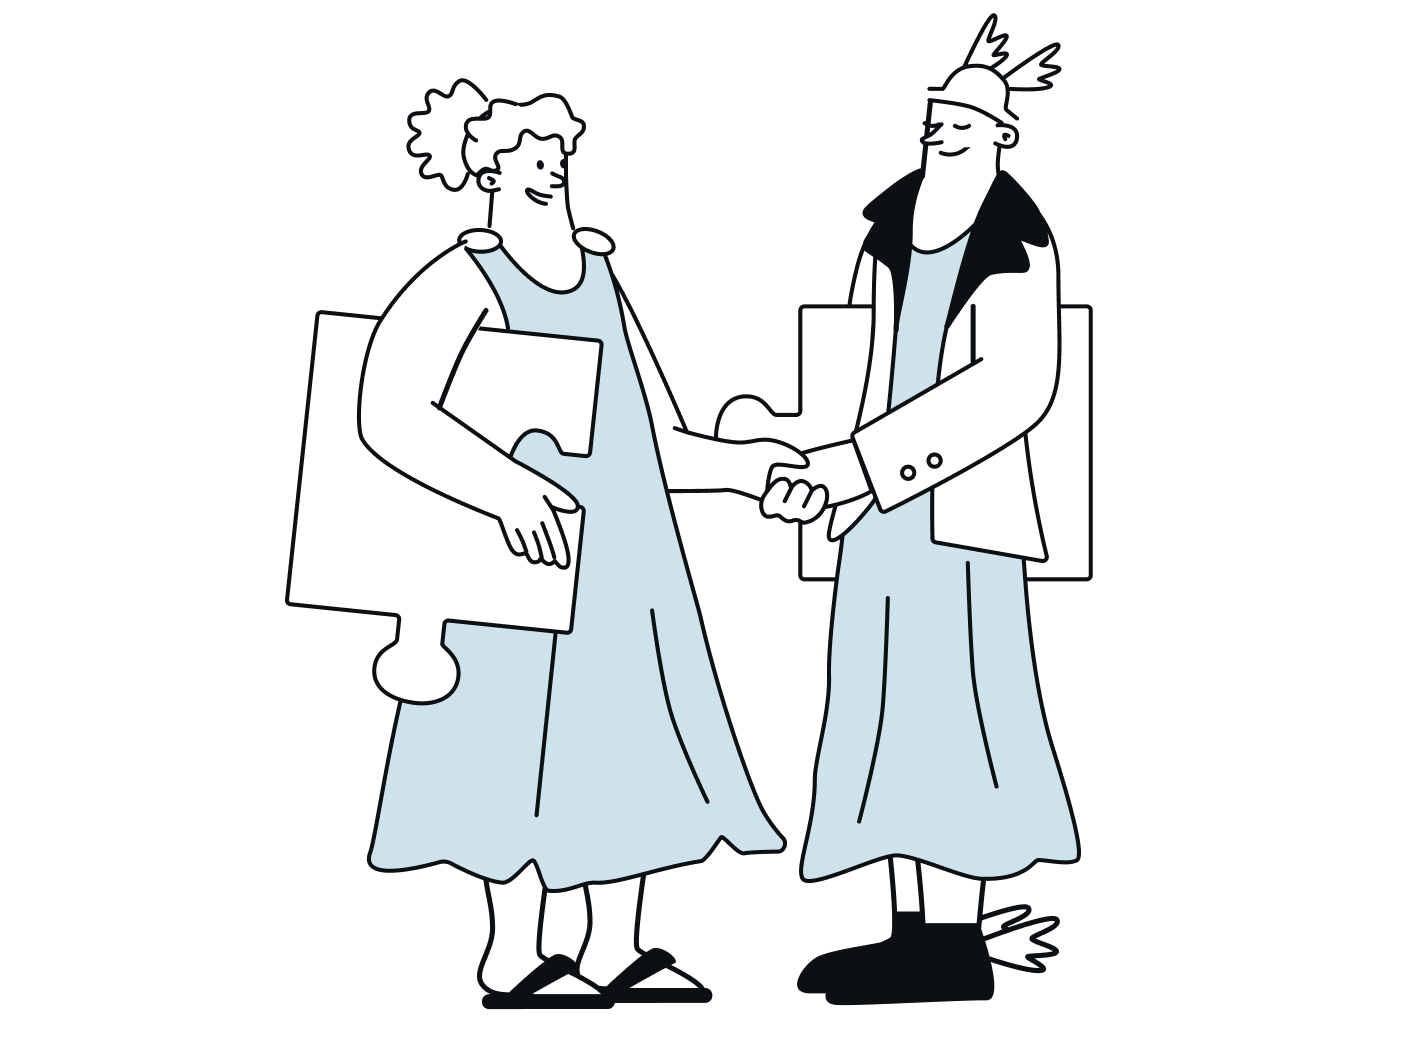 Artemis und Hermes reichen sich die Hand und tragen große Puzzleteile unter dem Arm